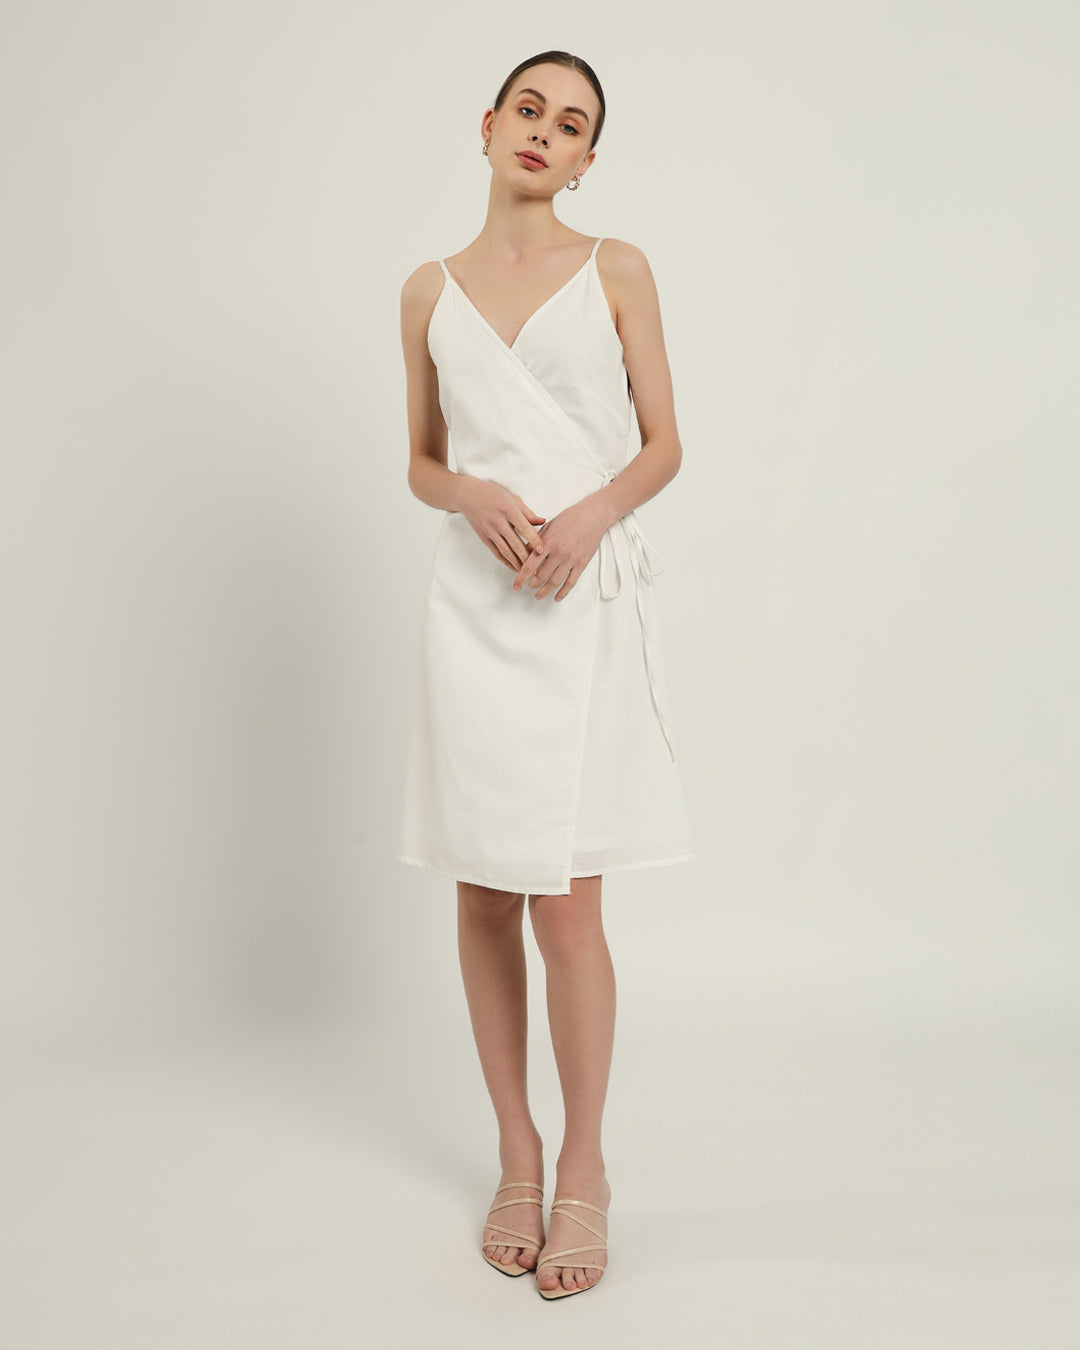 The Chambéry Daisy White Linen Dress